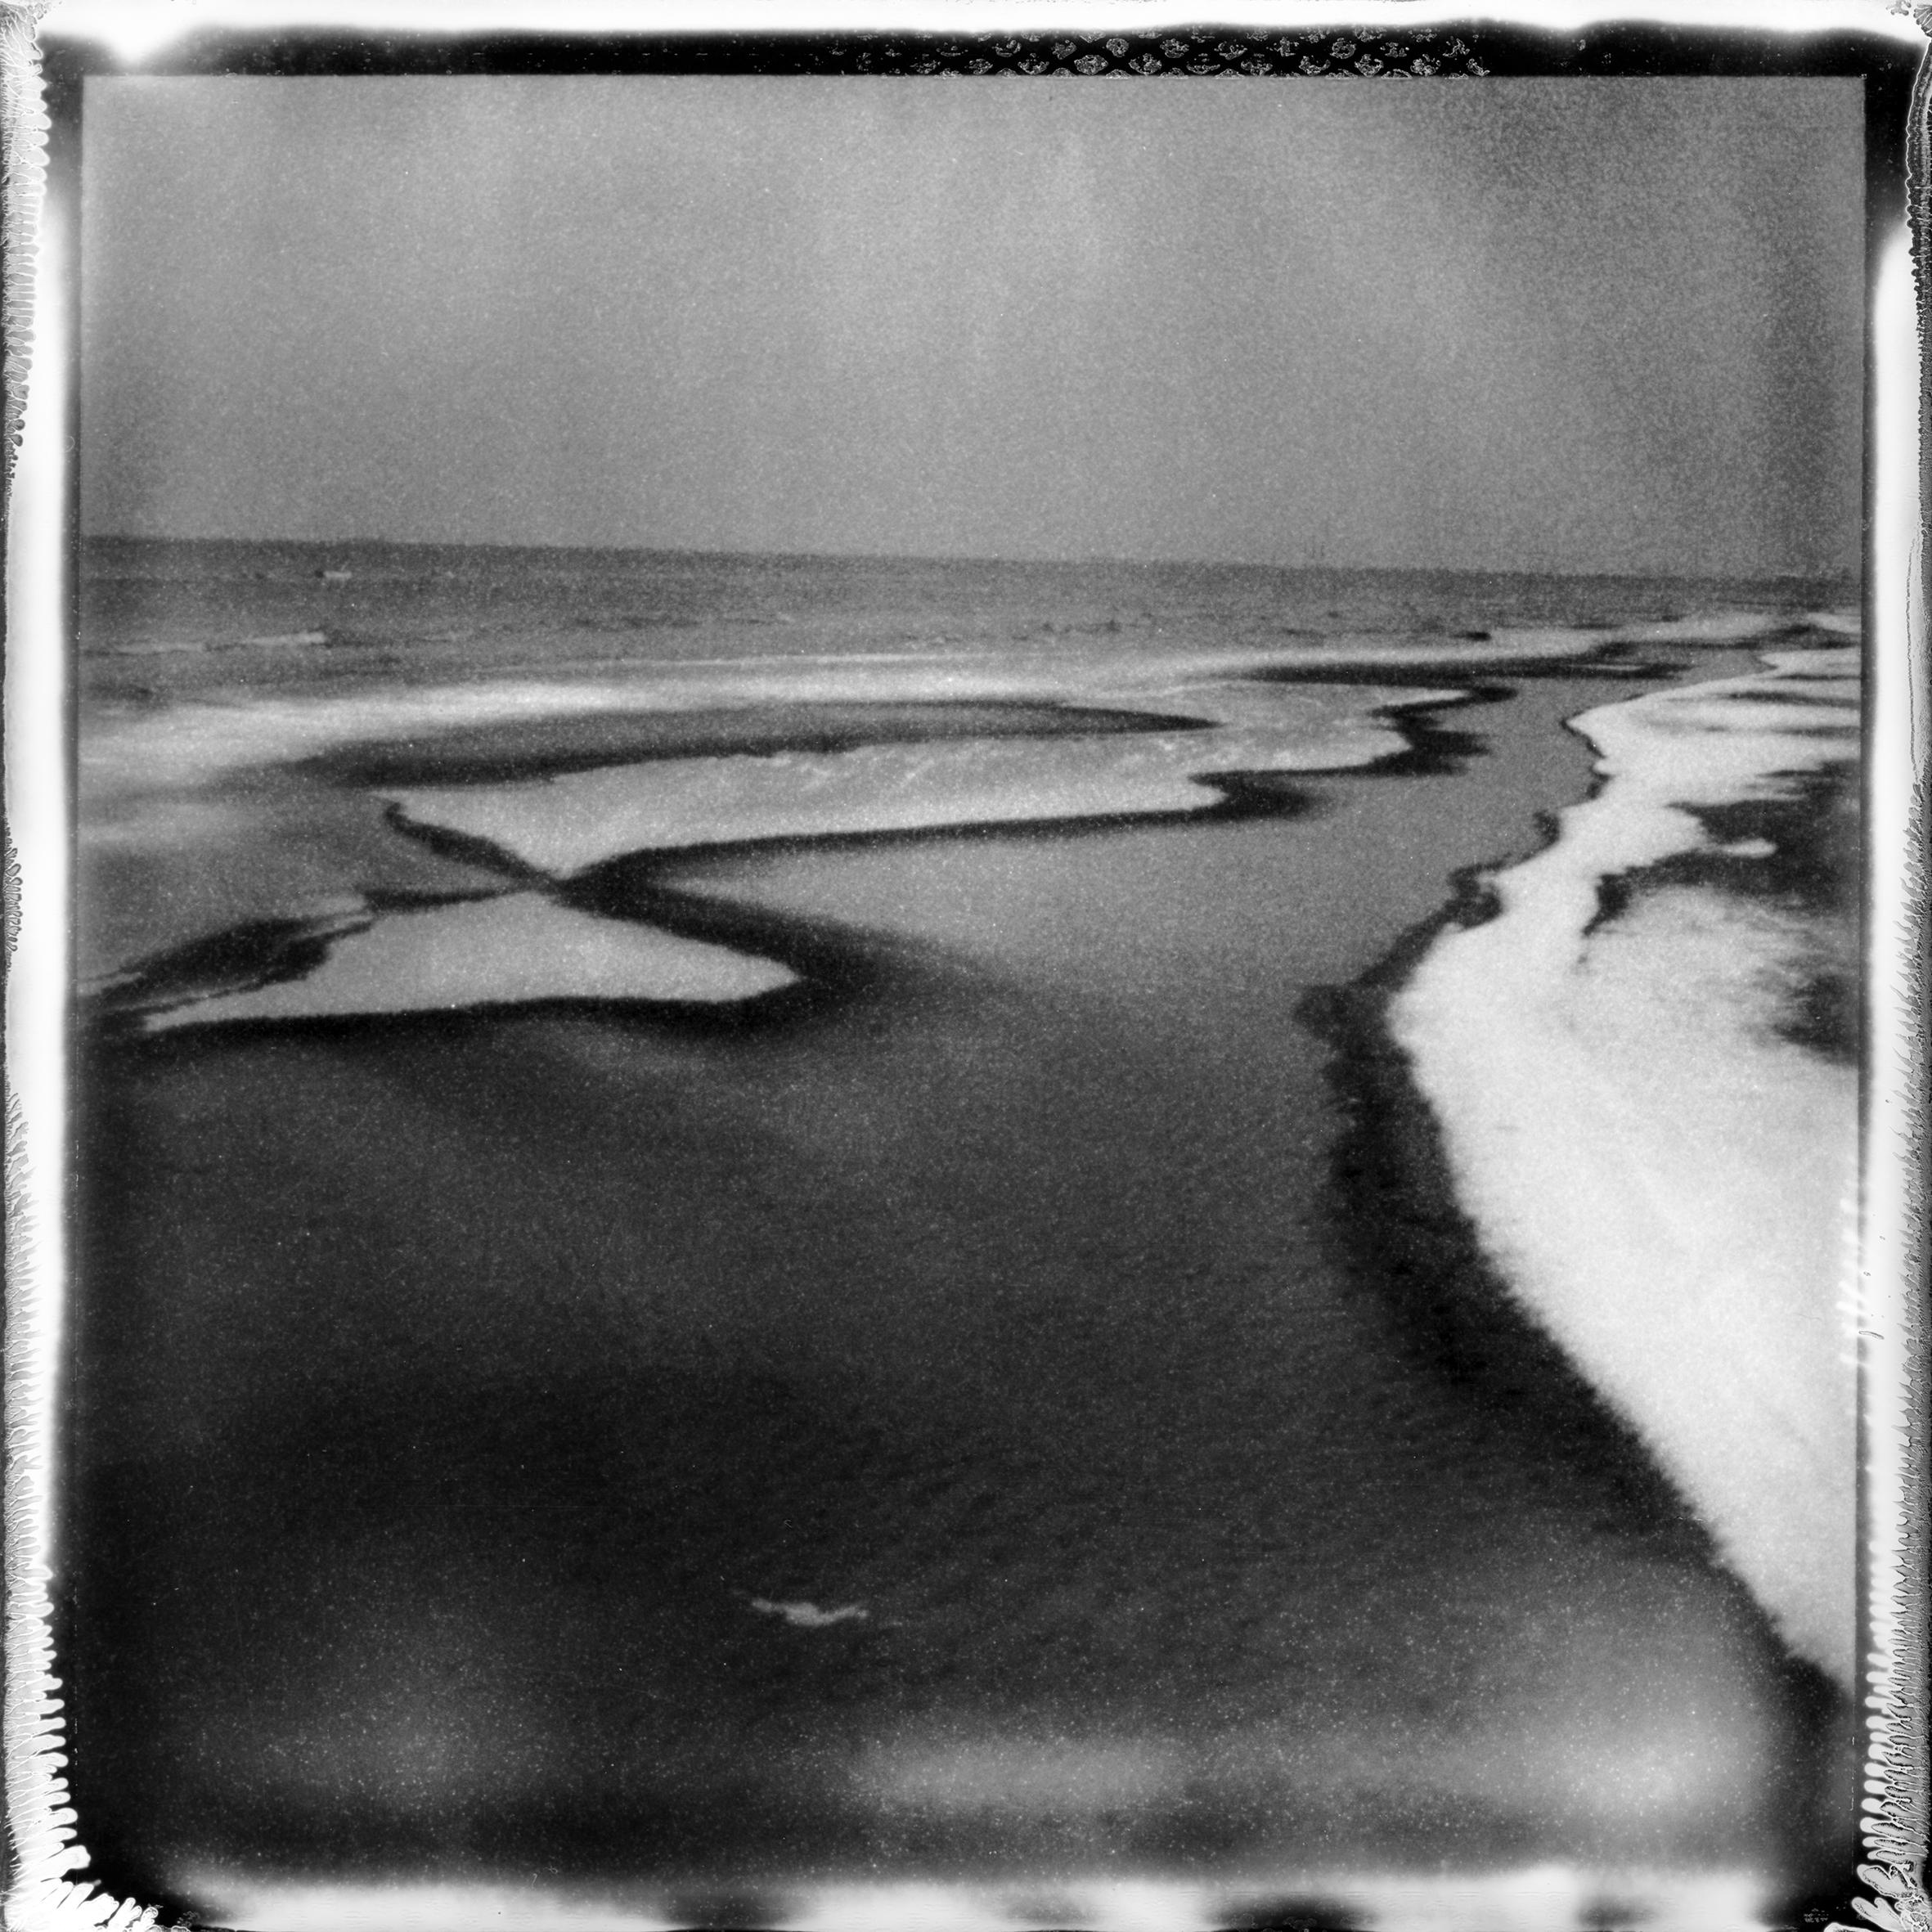 Ugne Pouwell Landscape Photograph – „Frozen beach #3“ – Schwarz-Weiß- analoge Landschaftsfotografie in Schwarz-Weiß